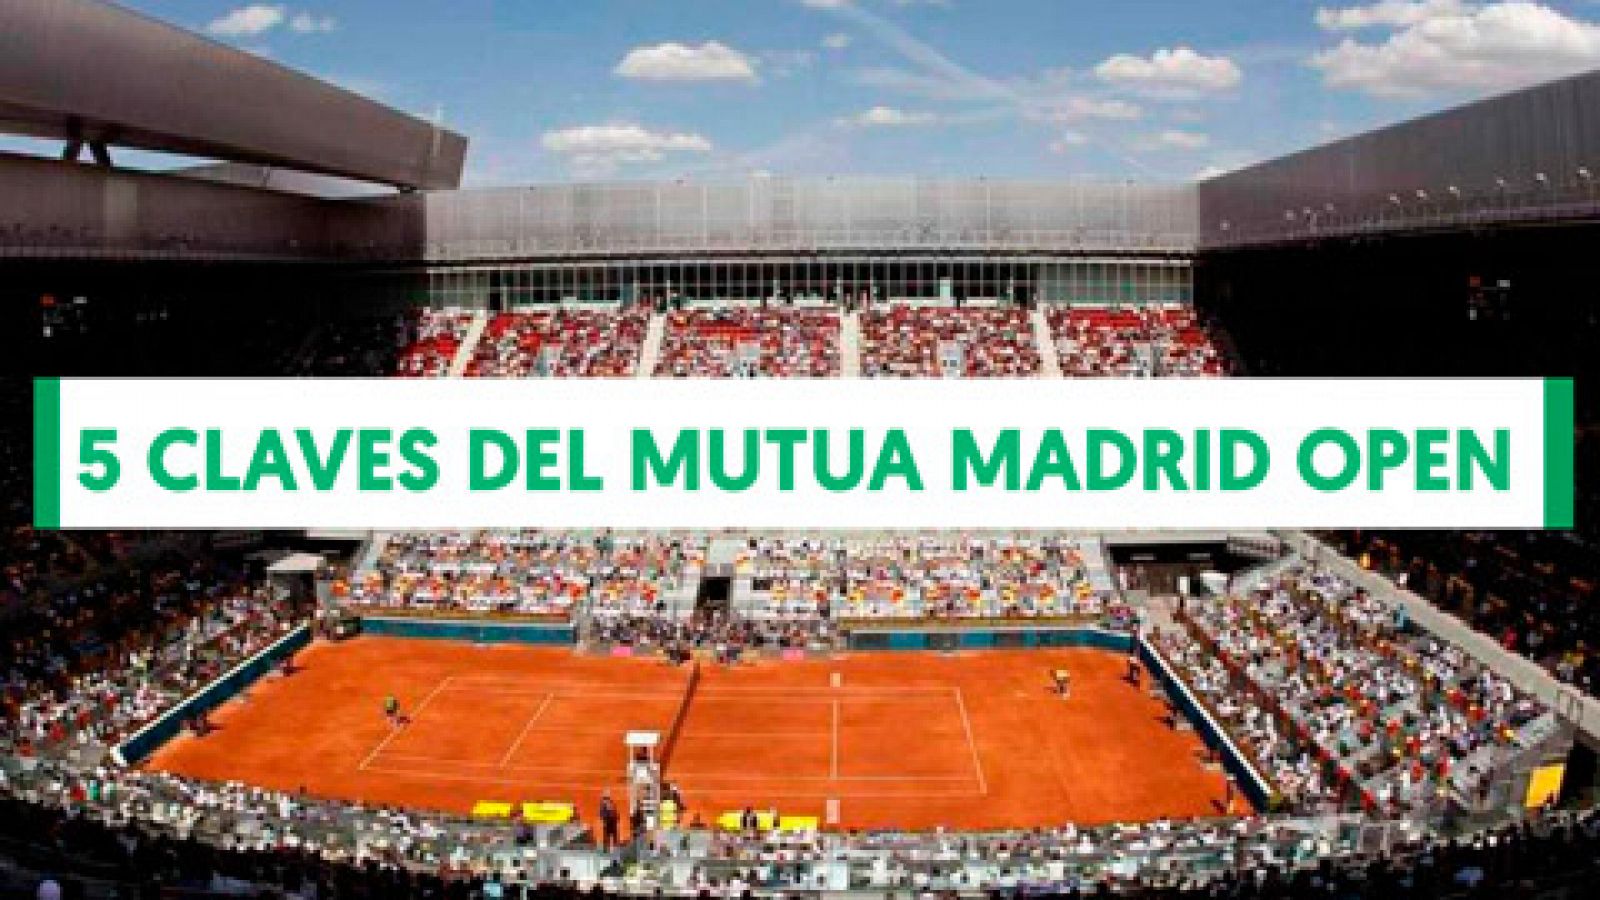 El regreso de Federer, el adiós de Ferrer o el salto de Feliciano a la dirección del torneo son algunas de las claves del Mutua Madrid Open 2019, que arranca este sábado 4 de mayo en la Caja Mágica de Madrid y que podrás seguir al completo en RTVE. 